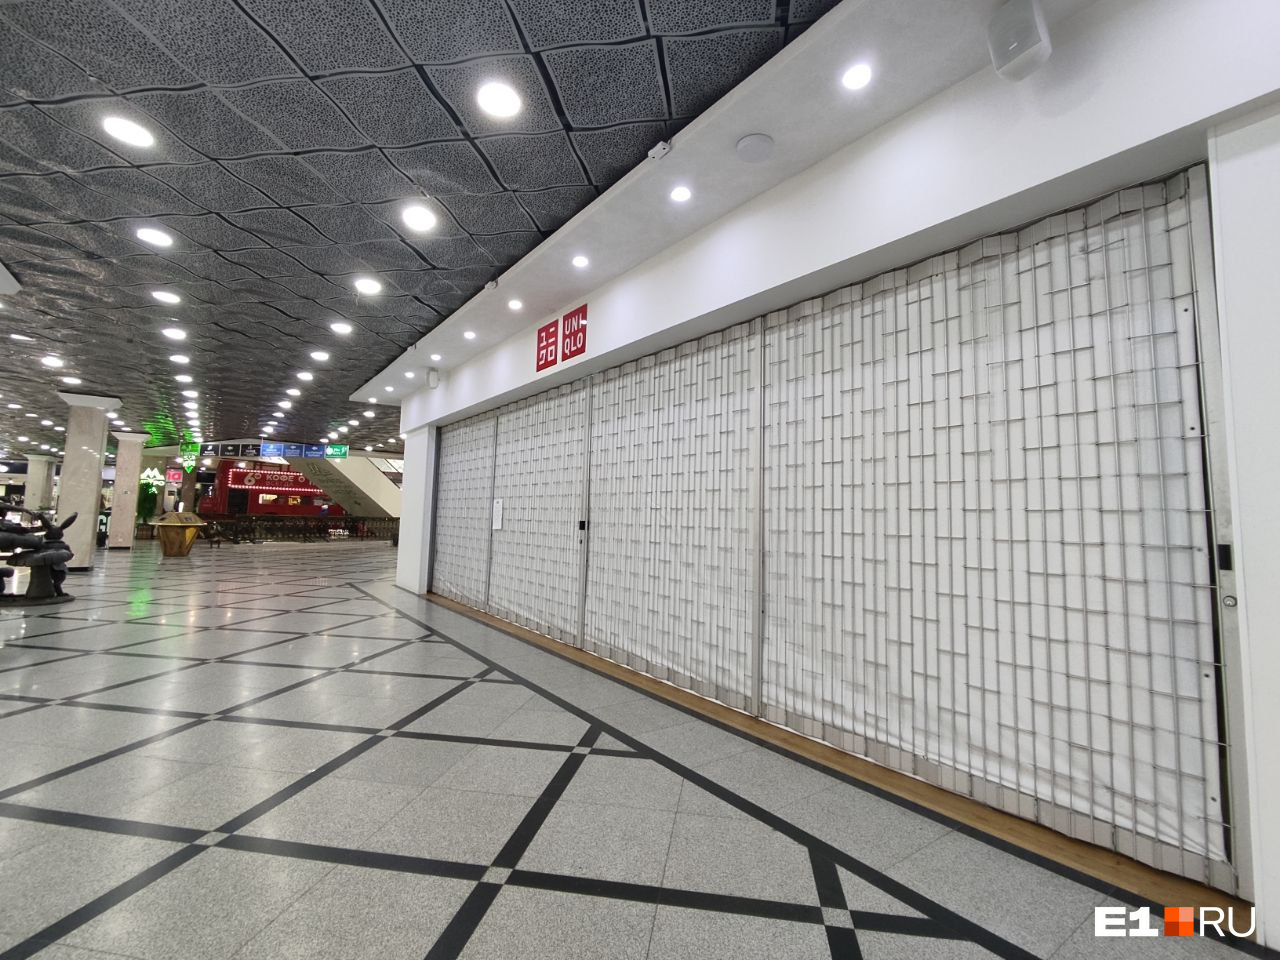 Магазины закрываются. В Екатеринбурге назвали три самых опустевших торговых центра